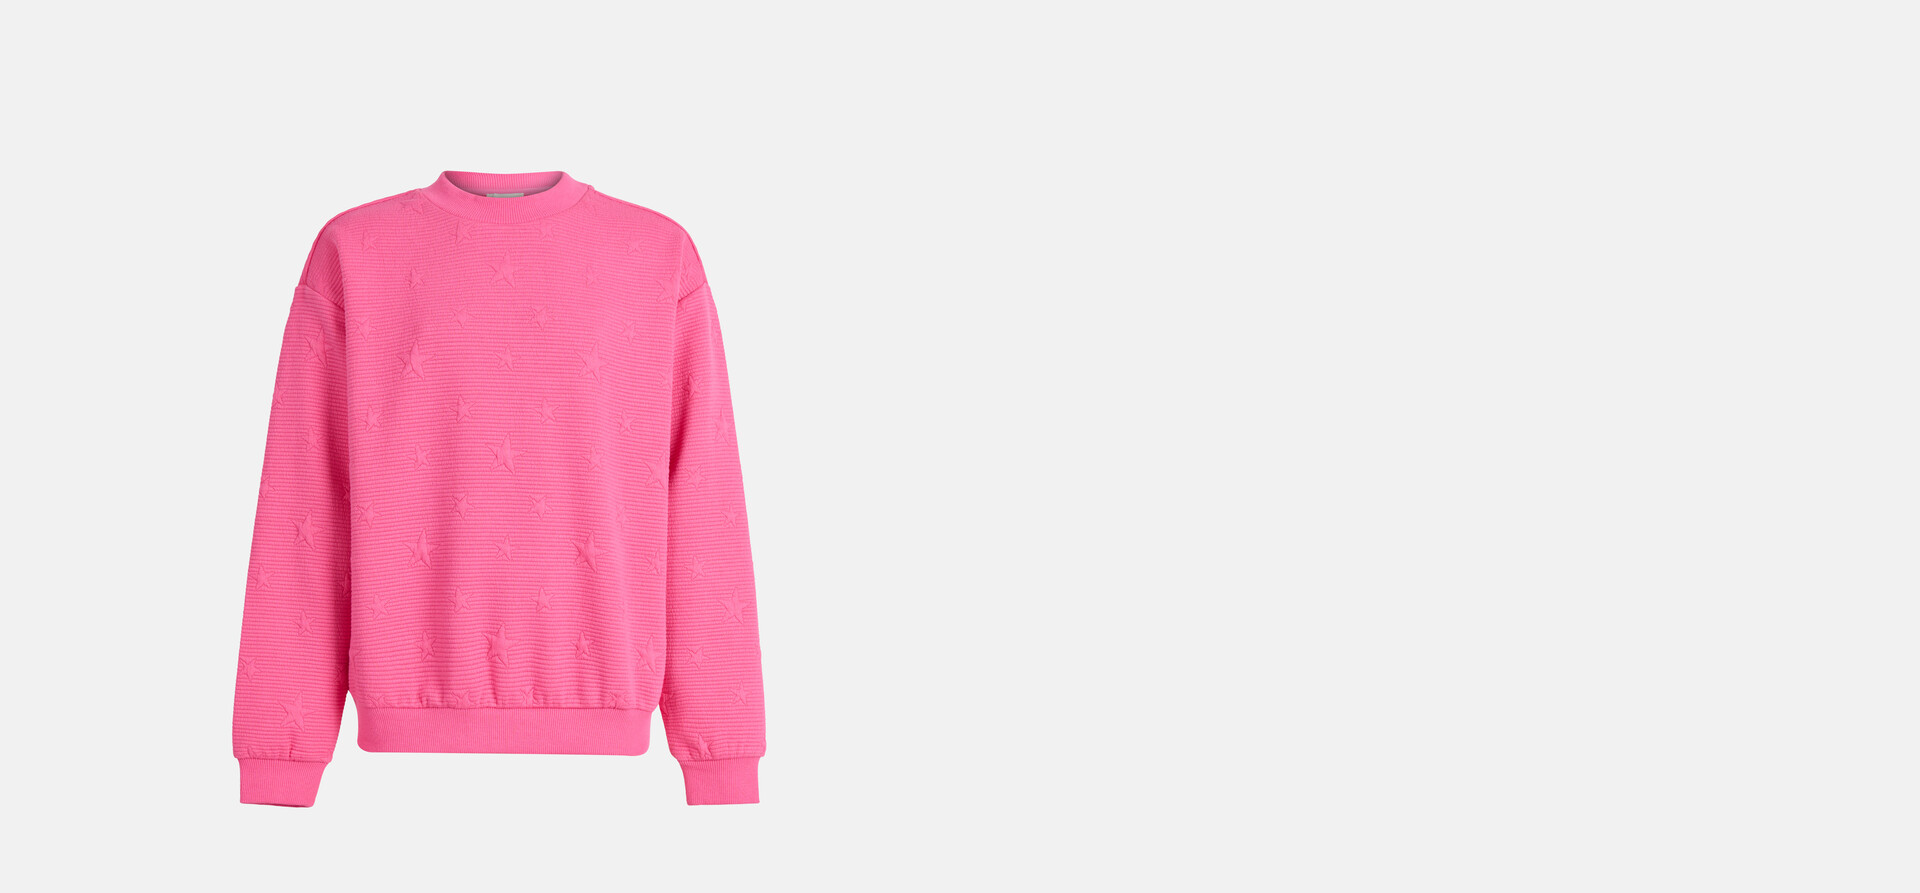 Sterren Sweater Roze SHOEBY GIRLS